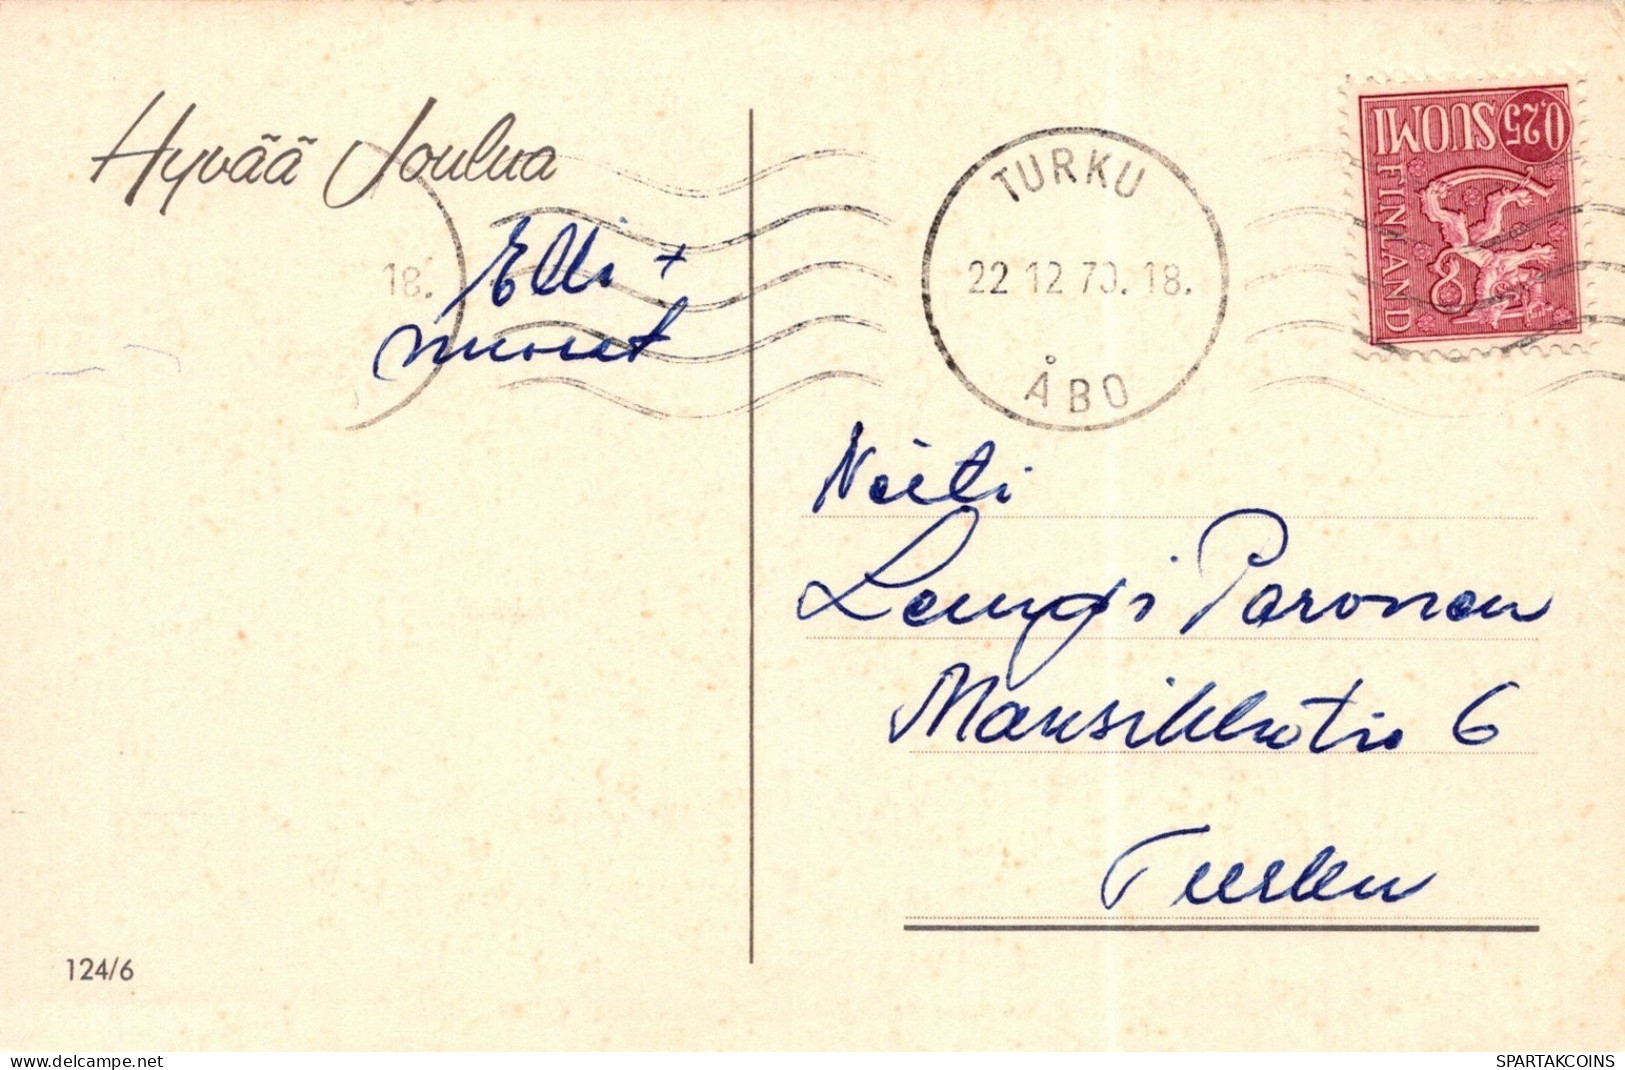 WEIHNACHTSMANN SANTA CLAUS WEIHNACHTSFERIEN Vintage Postkarte CPSMPF #PAJ461.DE - Kerstman